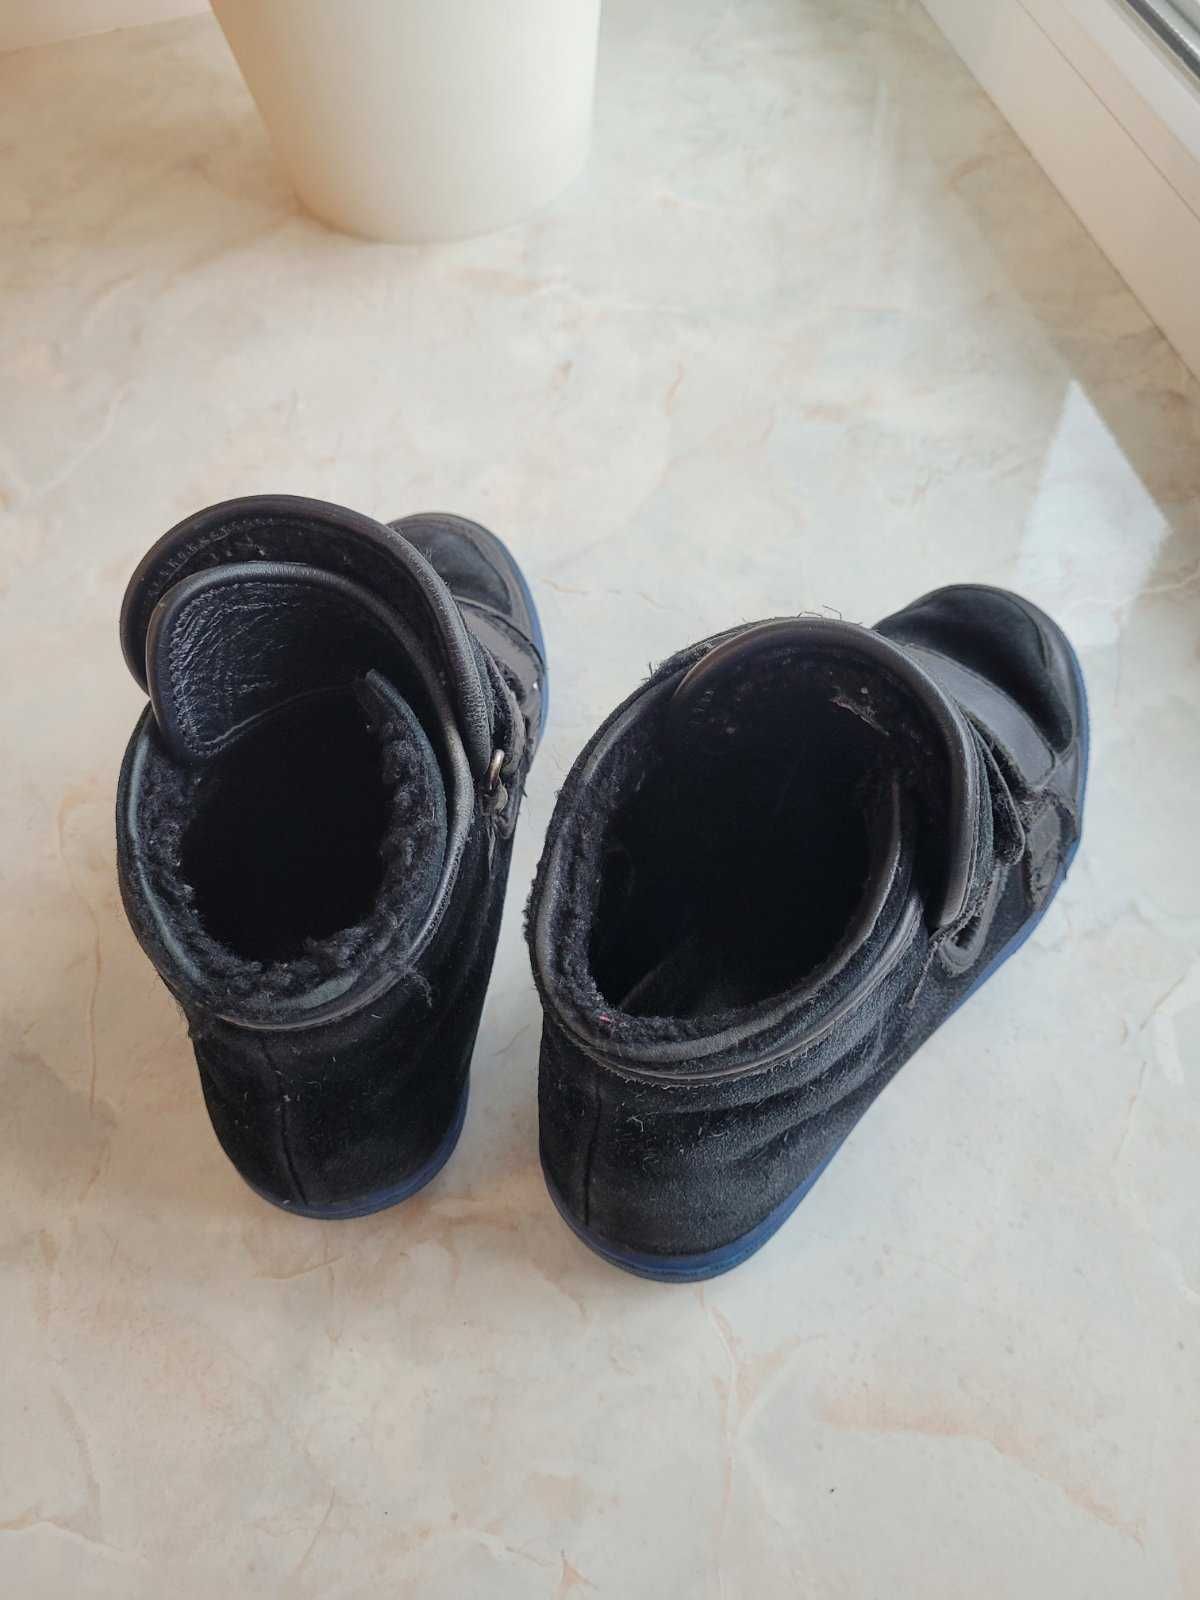 Продам ботинки DG на осень - зиму детские 30 размер кожа +замш